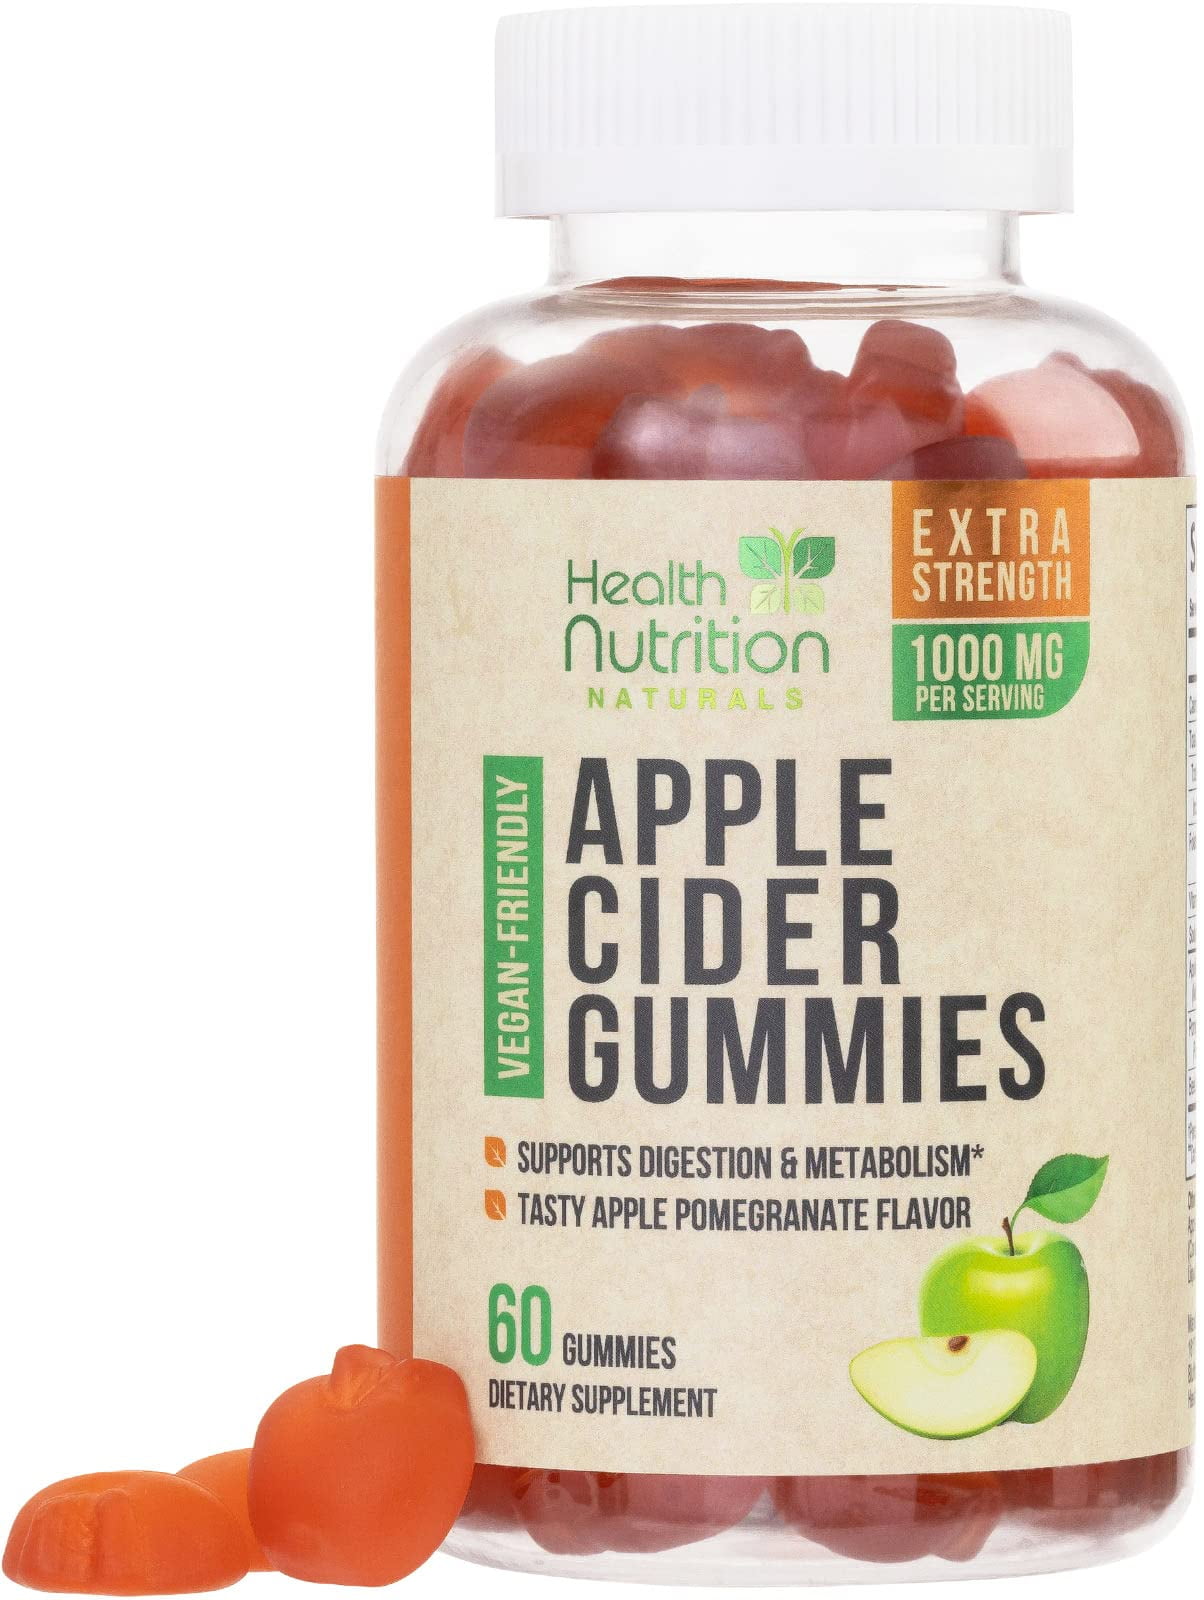 Hyland's Naturals Organic Apple Cider Vinegar Blast Gummies, Digestive  Health Support, 60 Vegan ACV Gummies (30 Days)